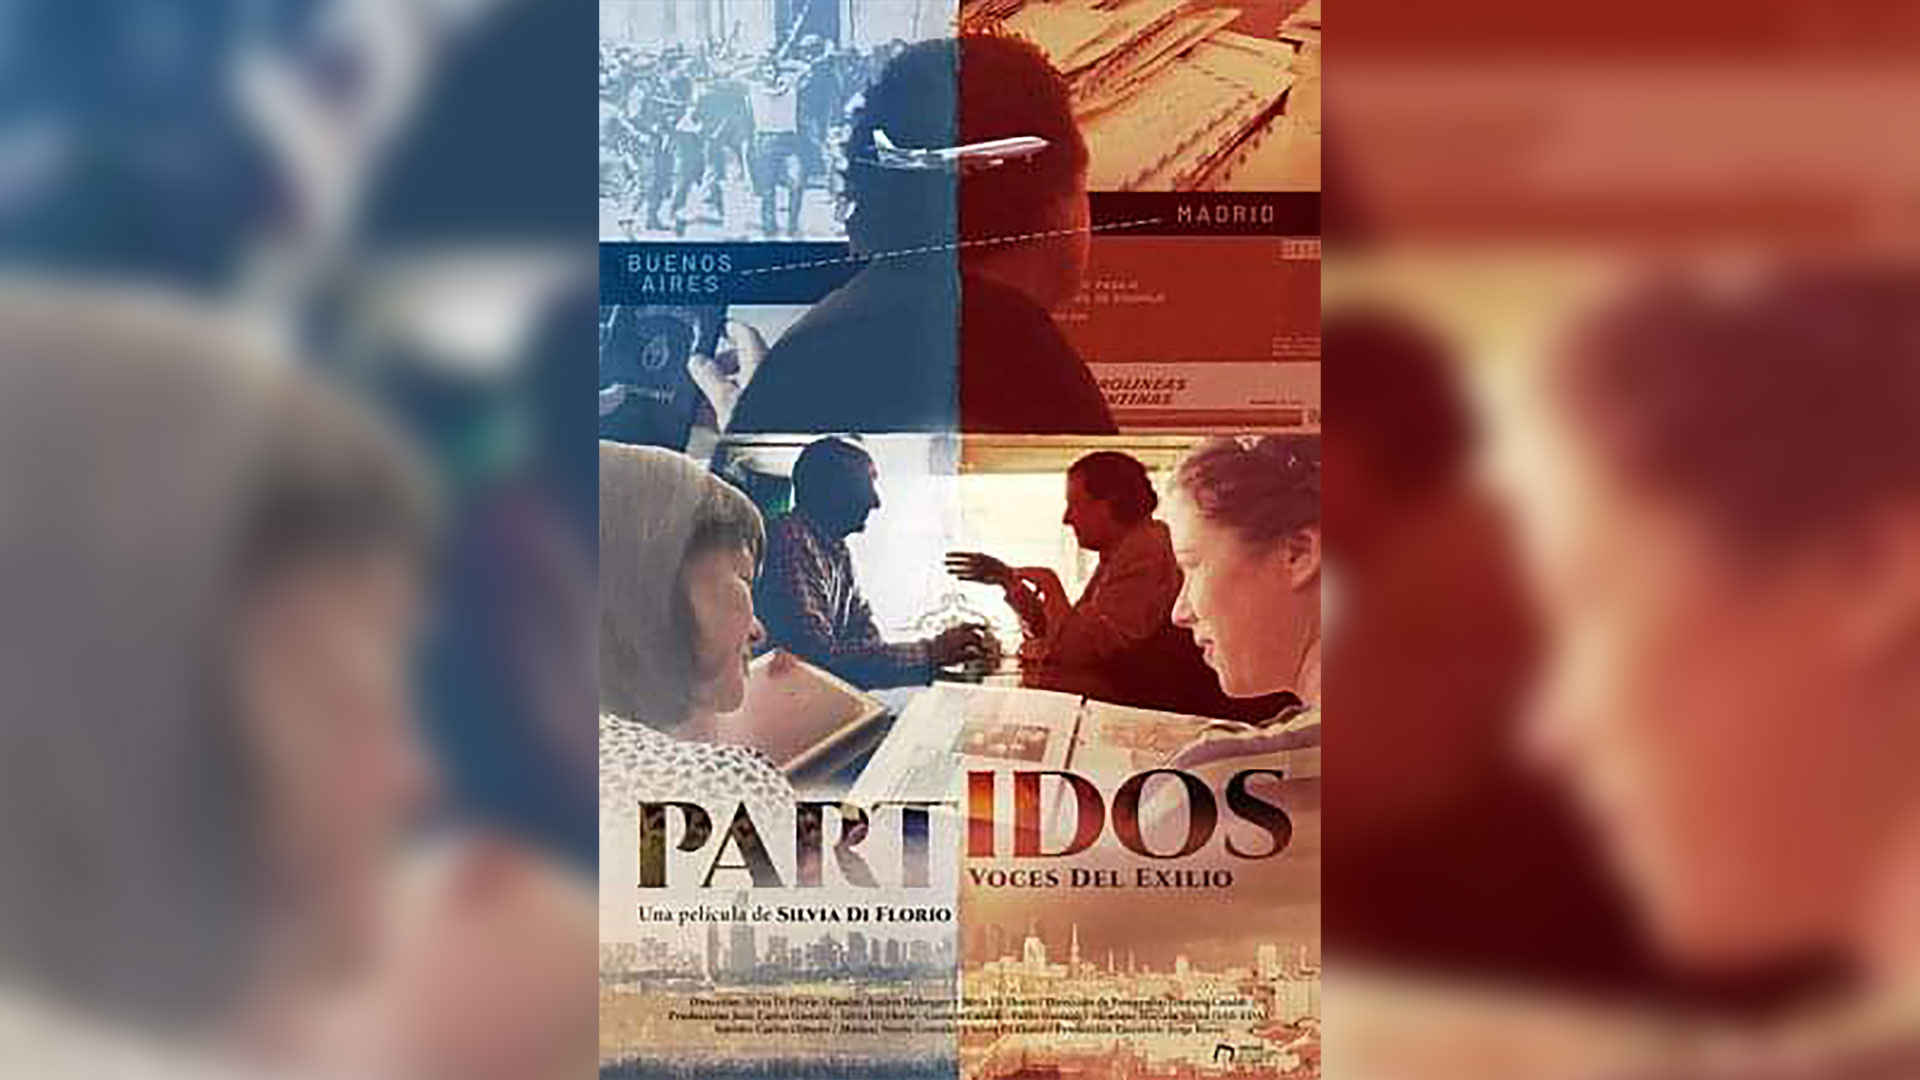 Vi “Partidos”, un buen documental sobre el exilio argentino, y pasé del recuerdo emocionado a la profunda indignación